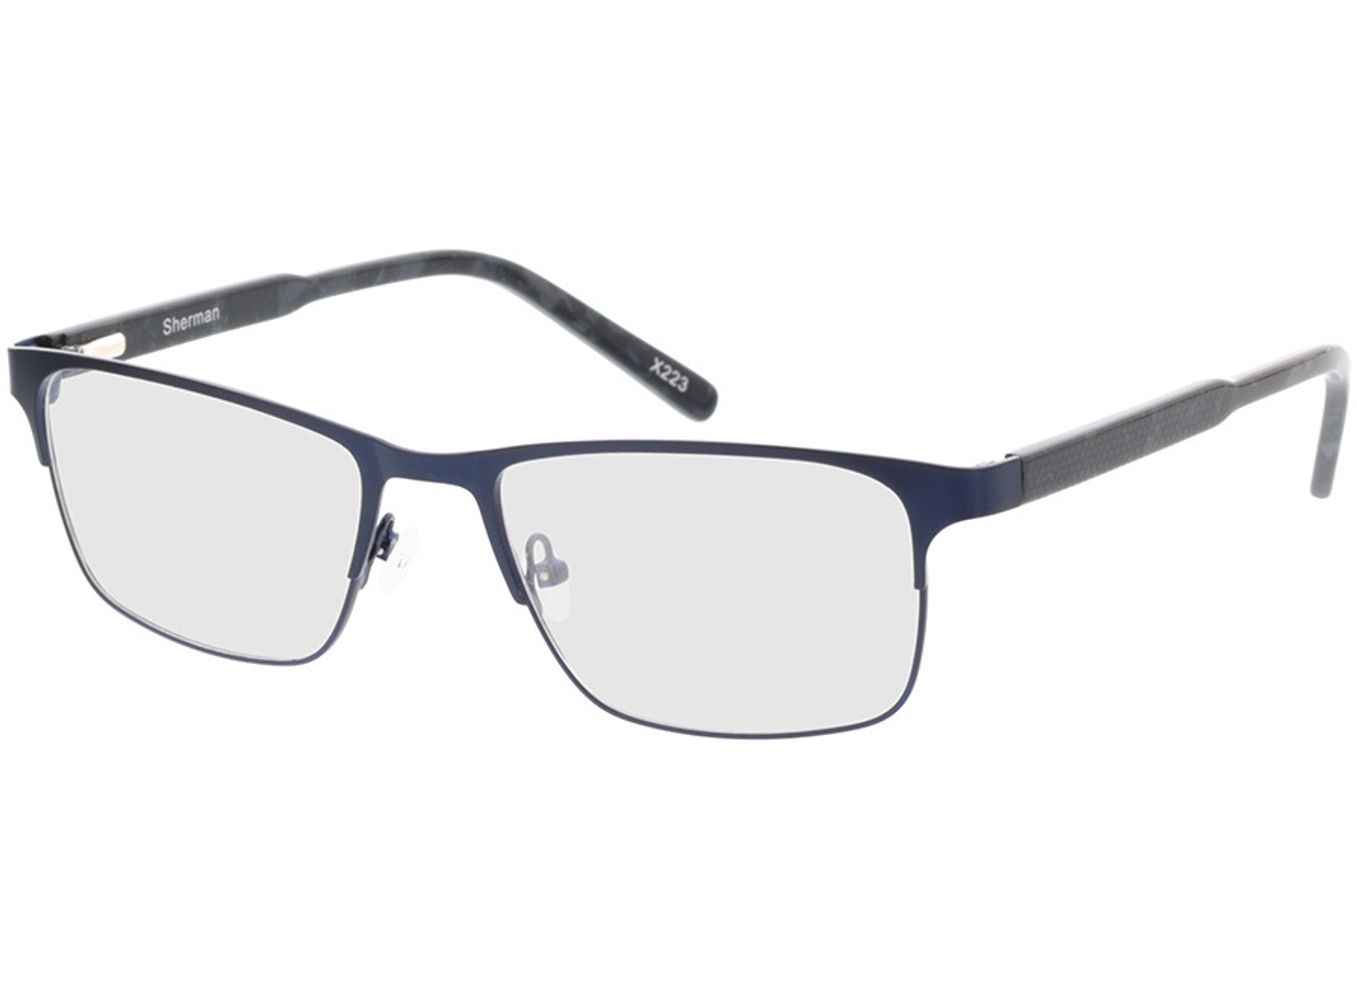 Sherman - blau/grau meliert Gleitsichtbrille, Vollrand, Rechteckig von Brille24 Collection